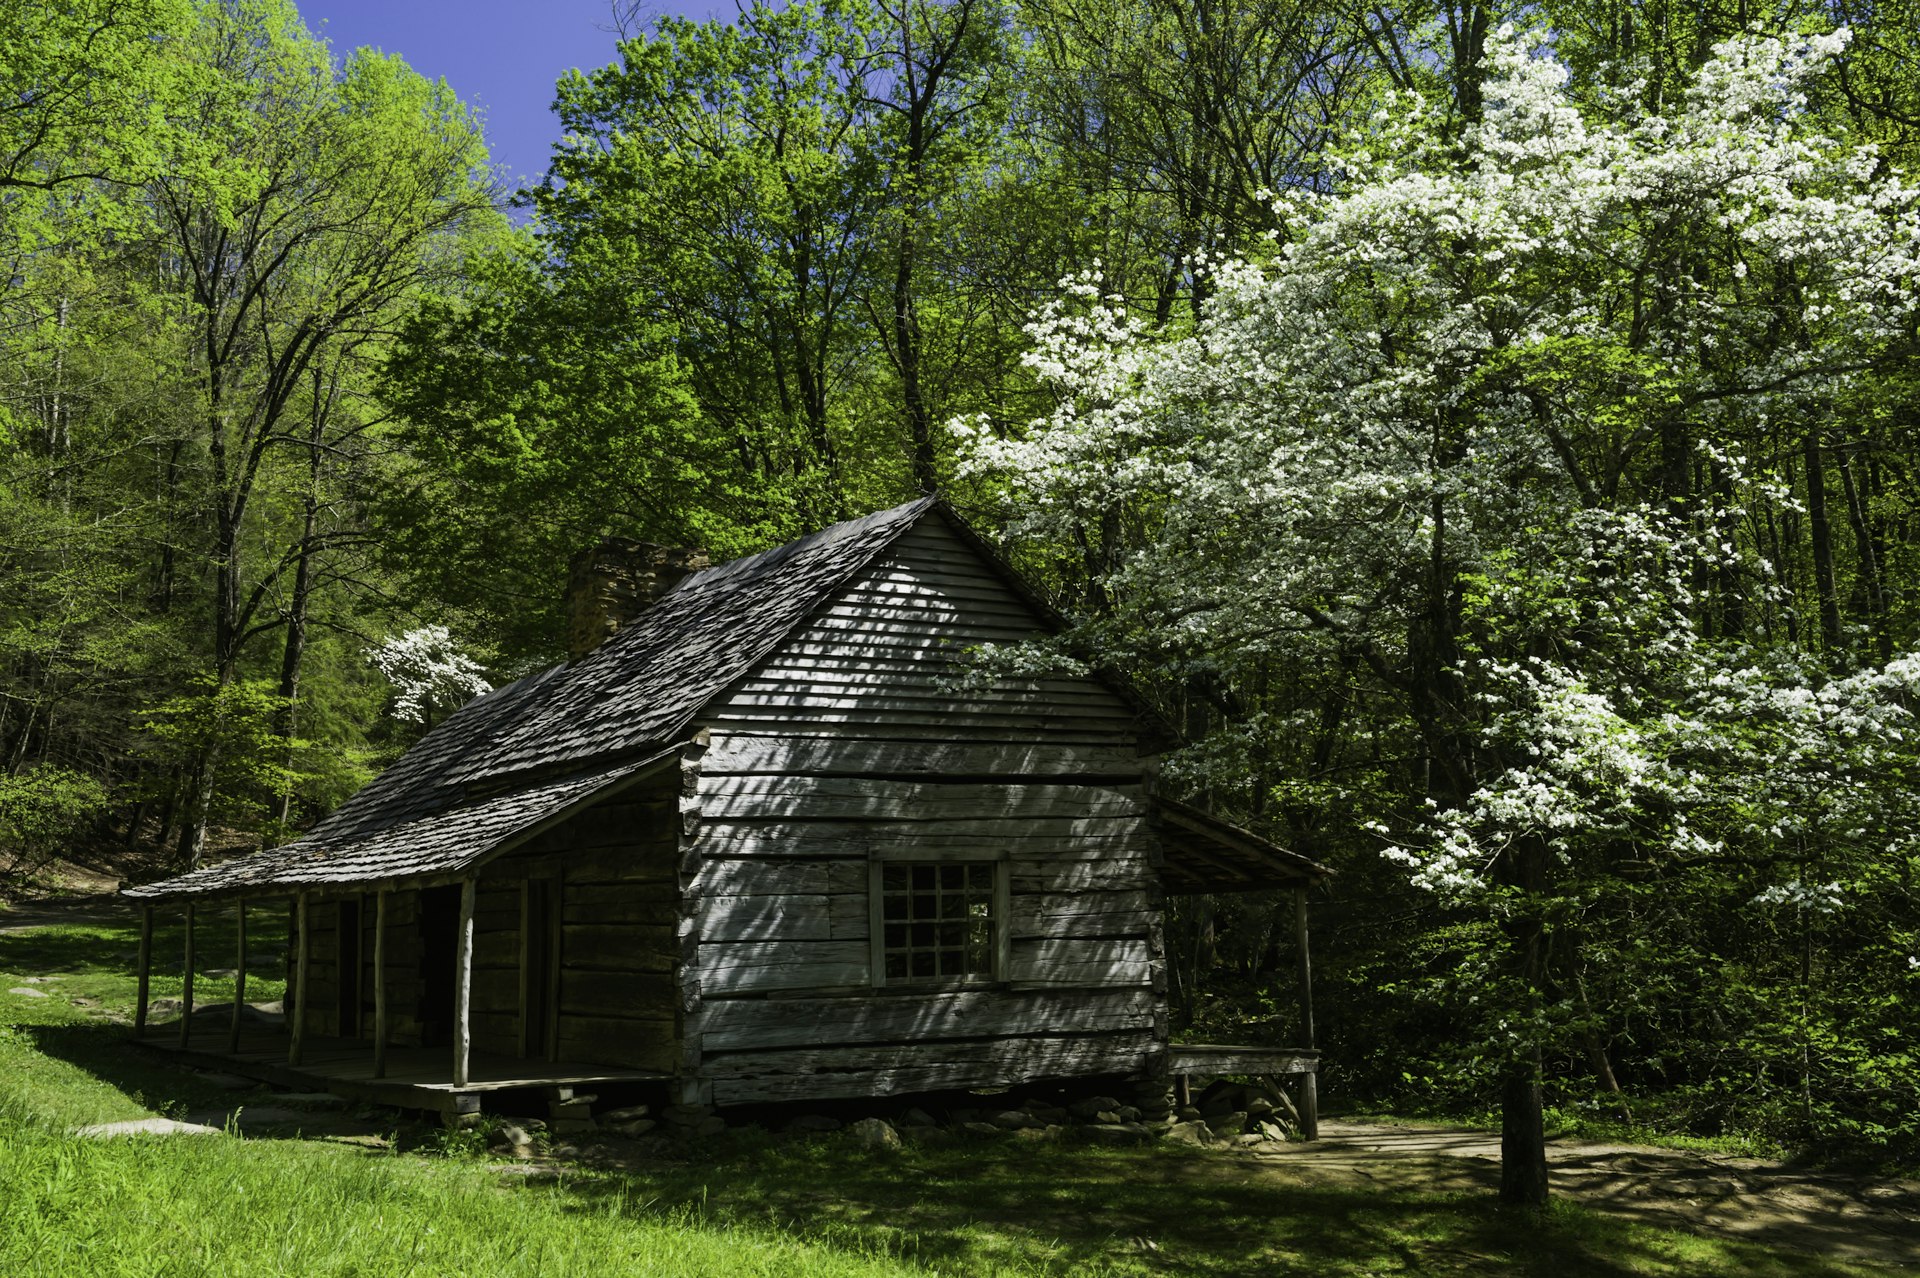 Noah 'Bud' Ogle's cabin in Spring